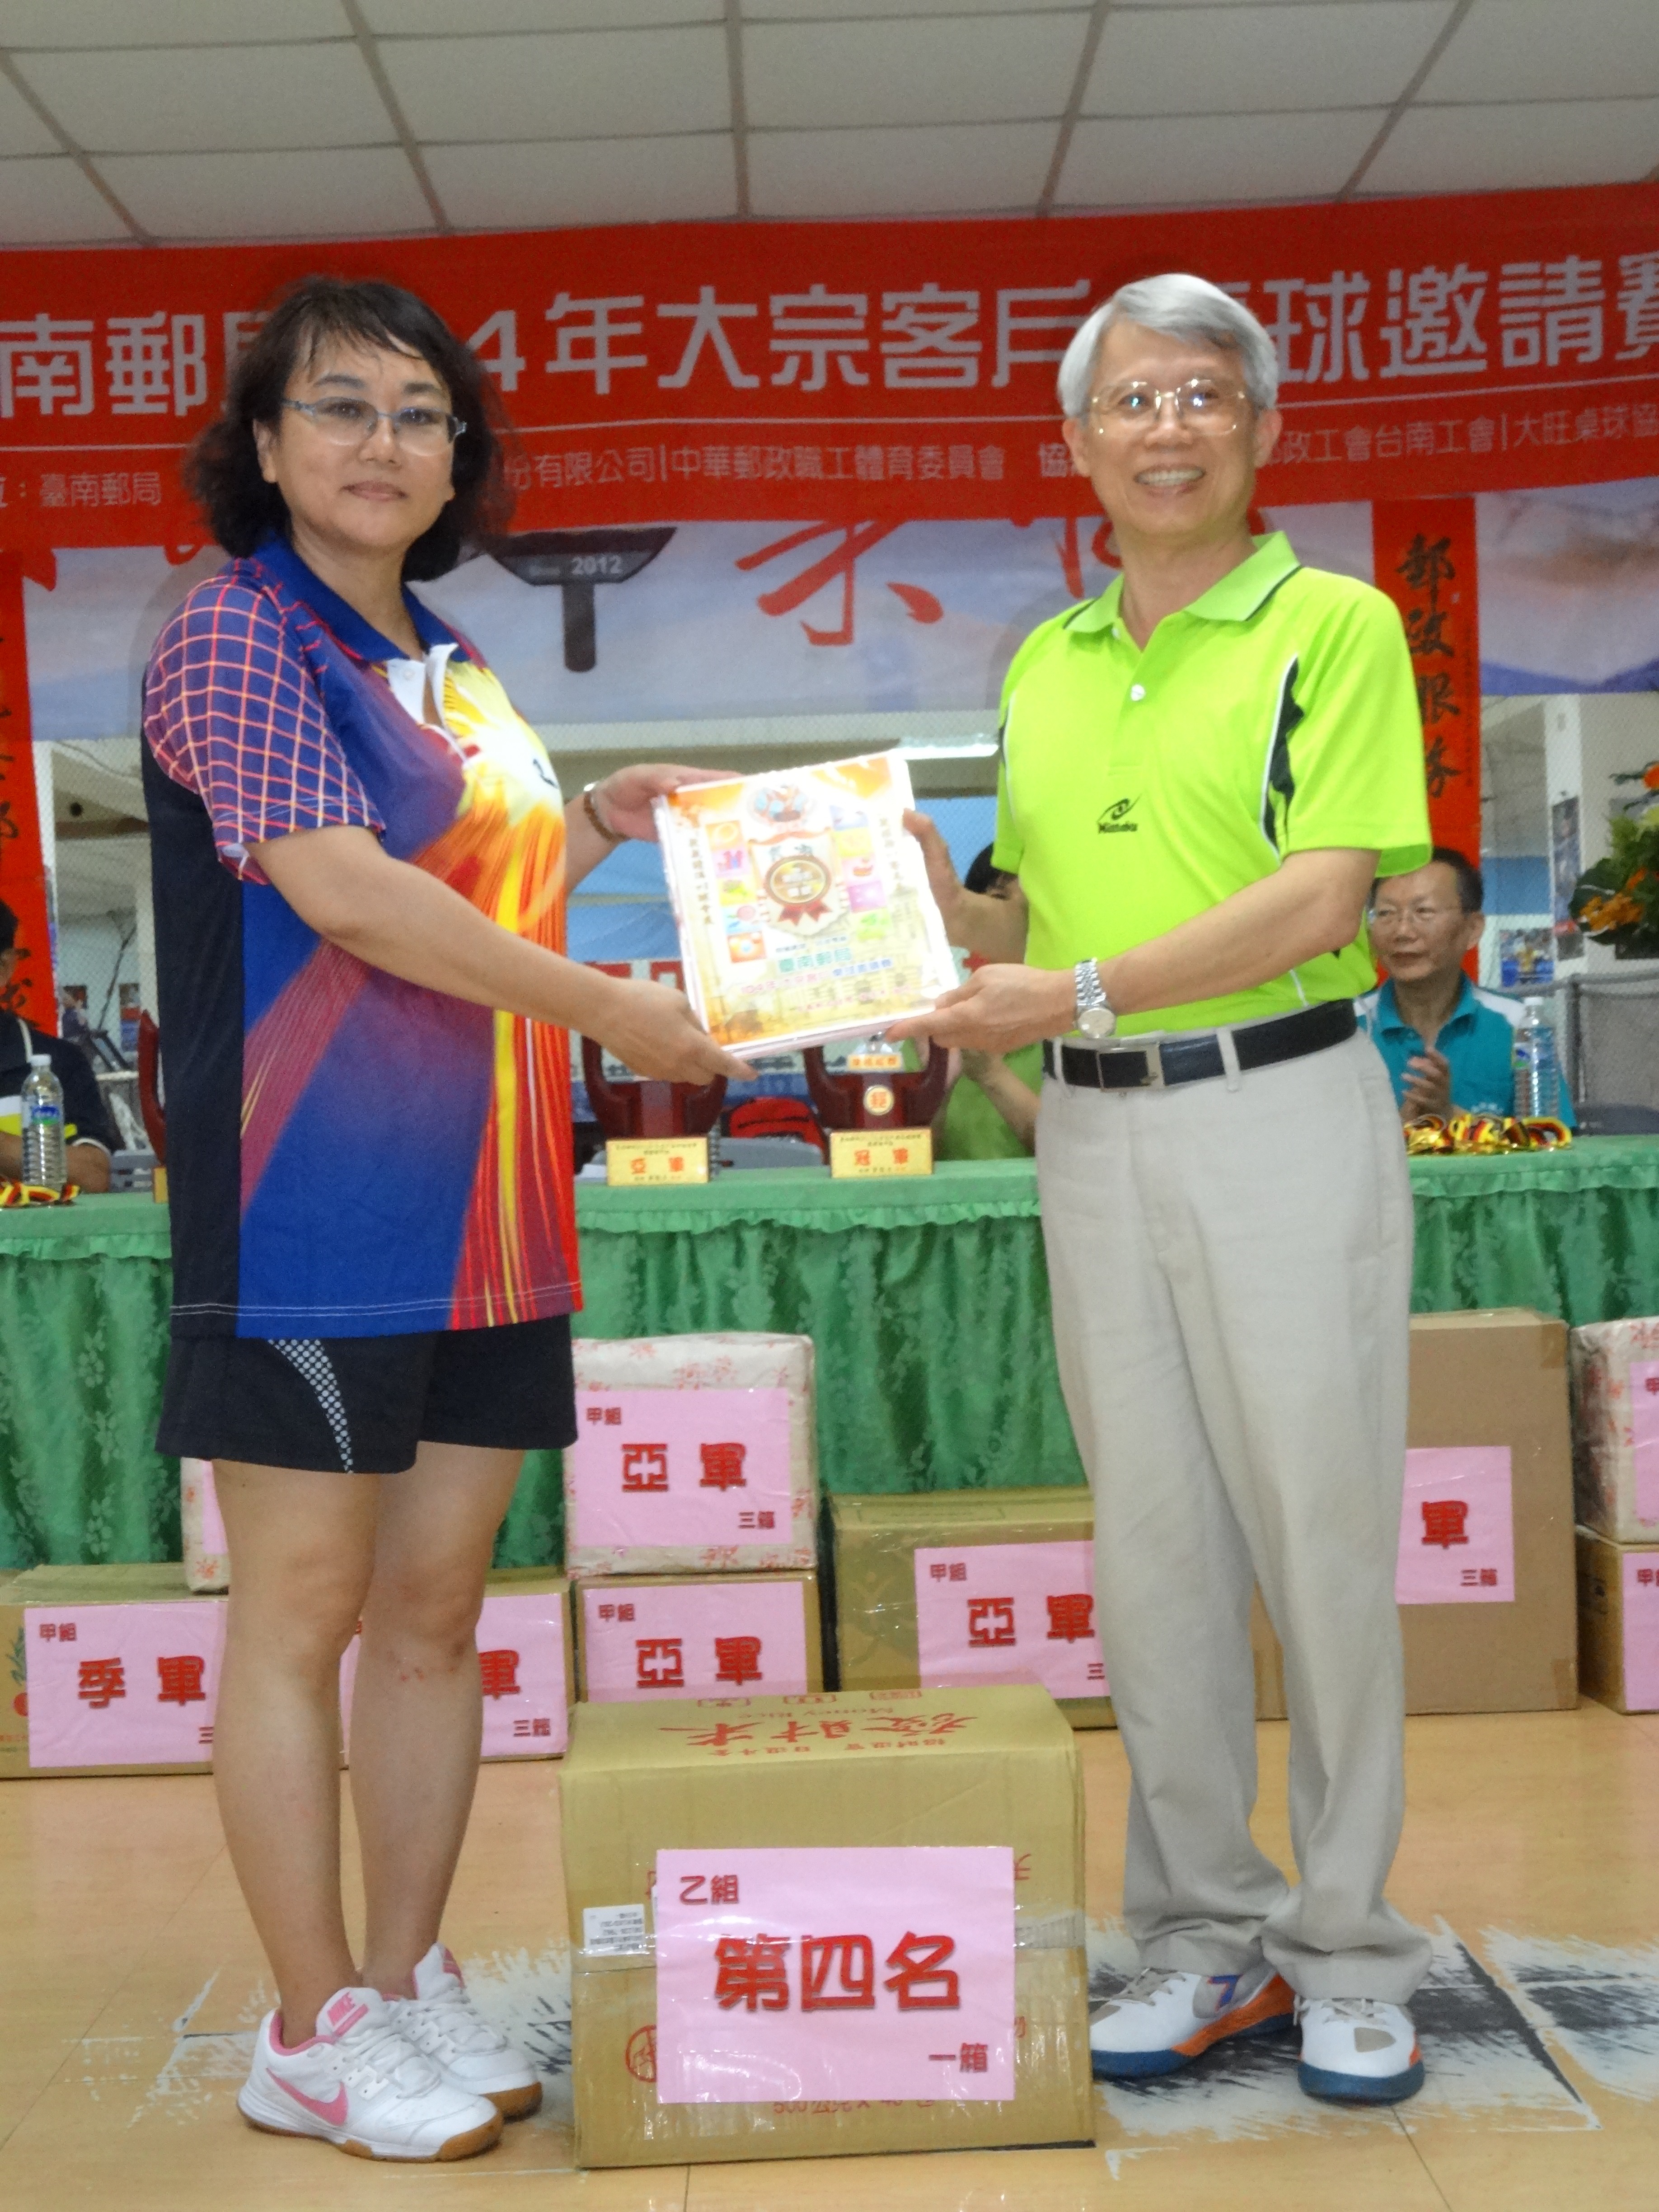  臺南郵局104年大宗客戶桌球邀請賽活動